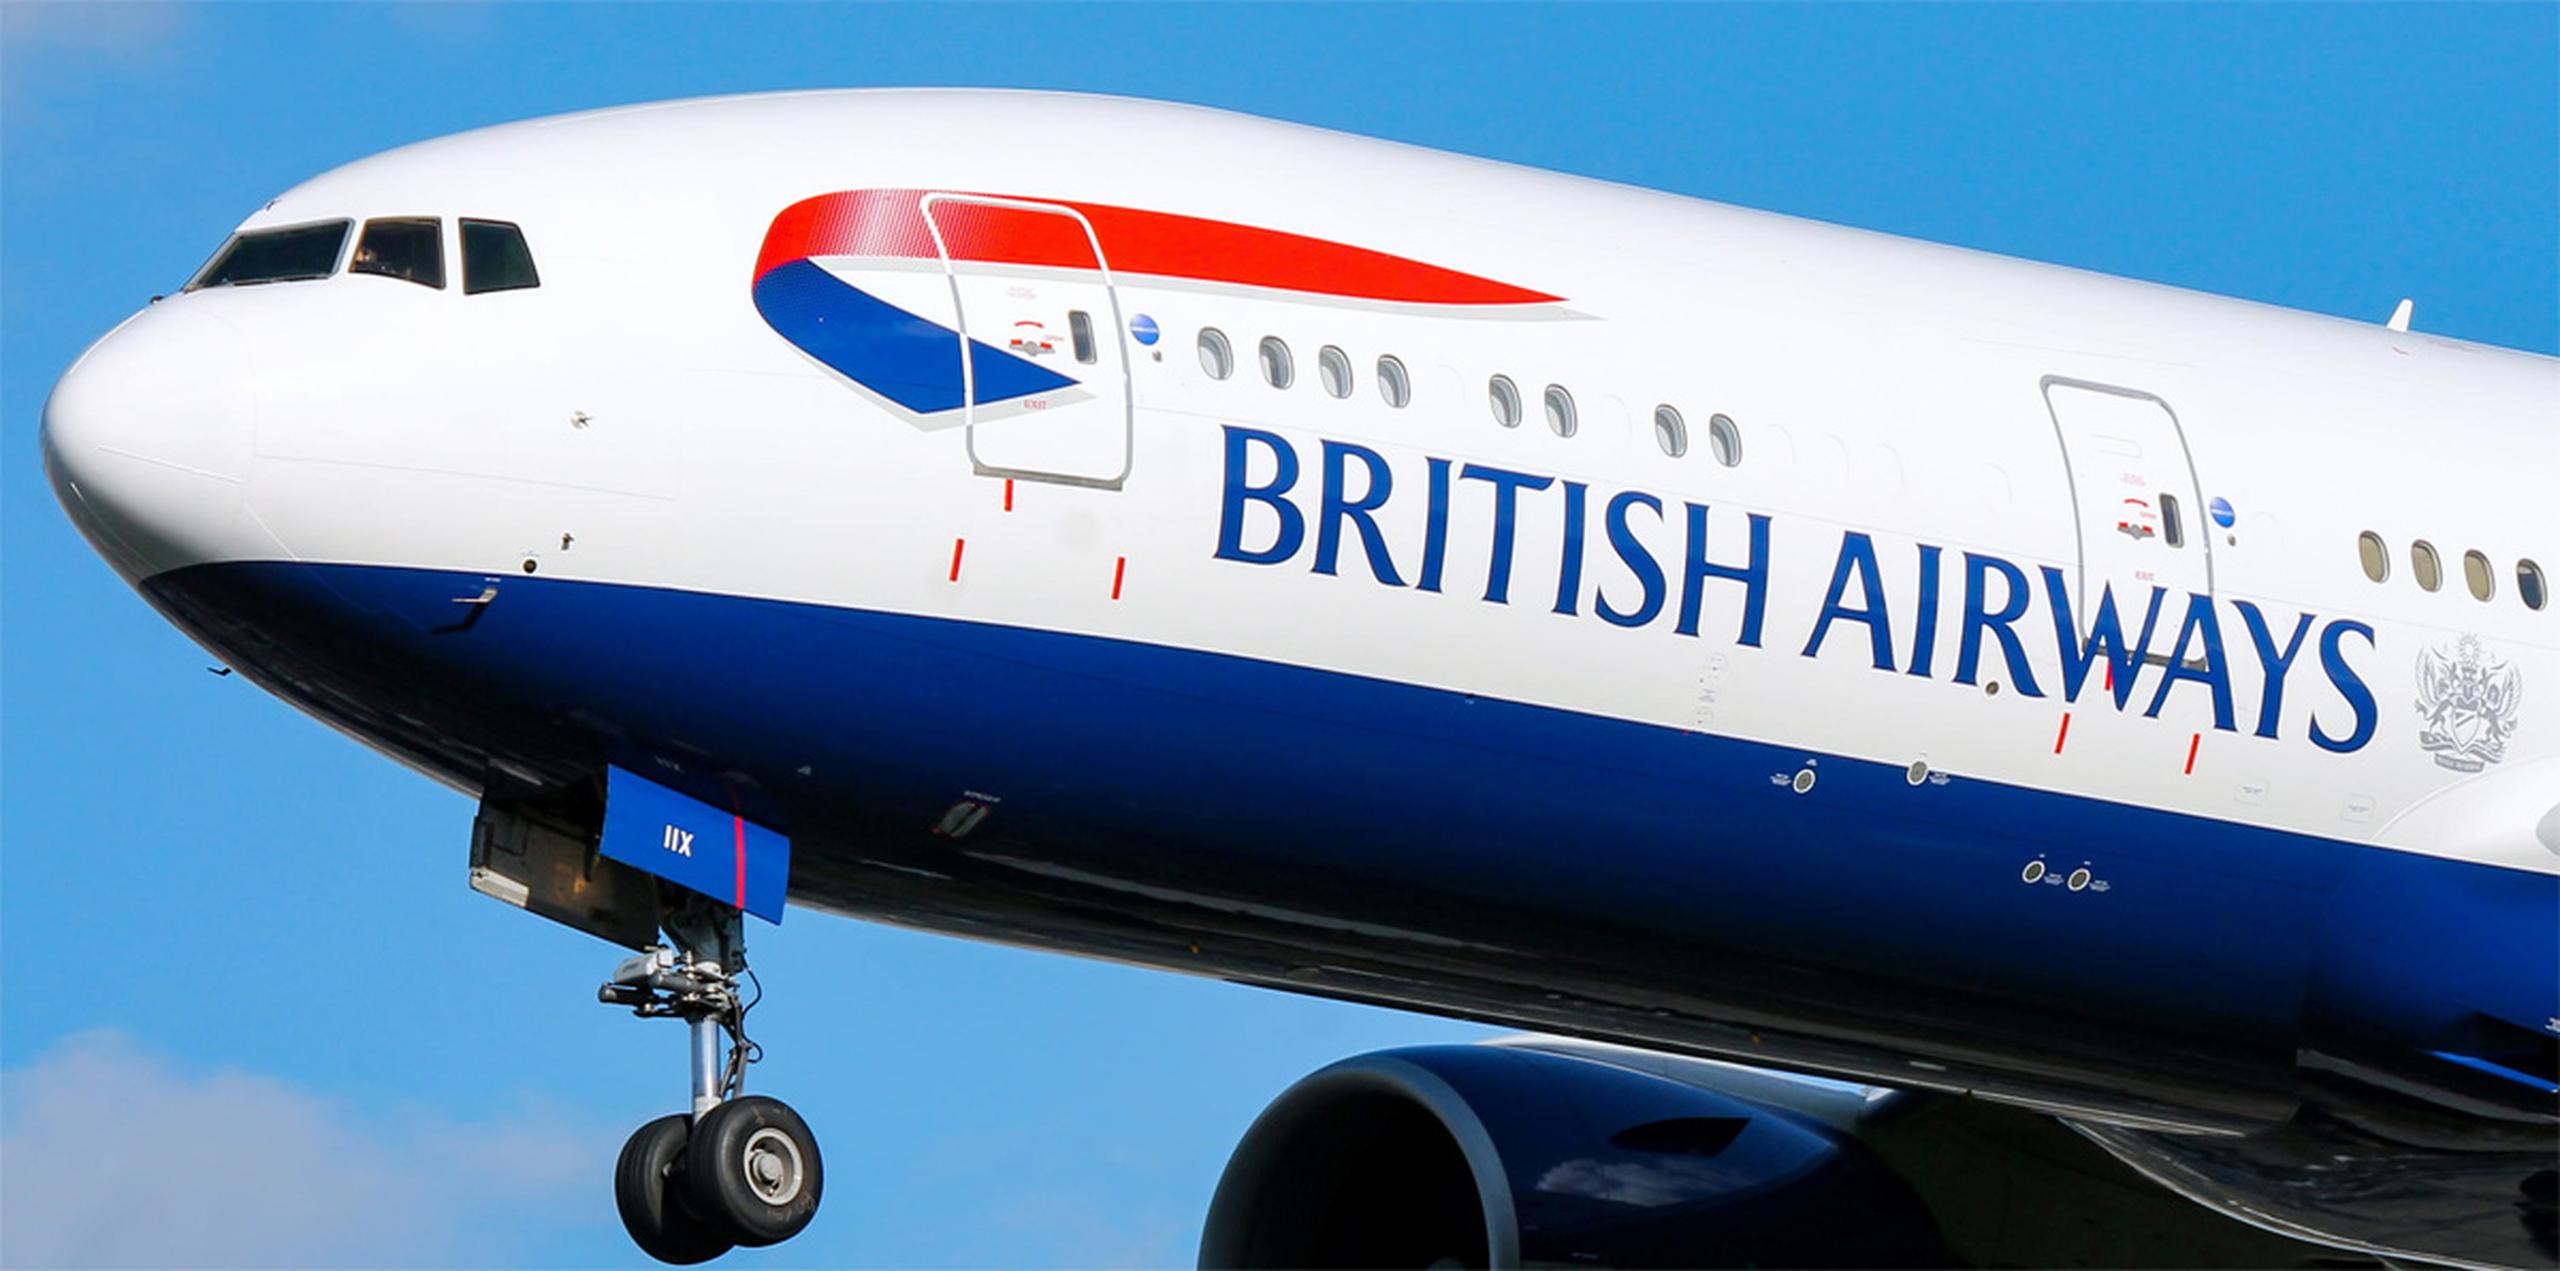 La aerolínea British Airways se disculpó y dijo estar satisfecha porque en el avión que despegó hubiese solo pasajeros de dos piernas.